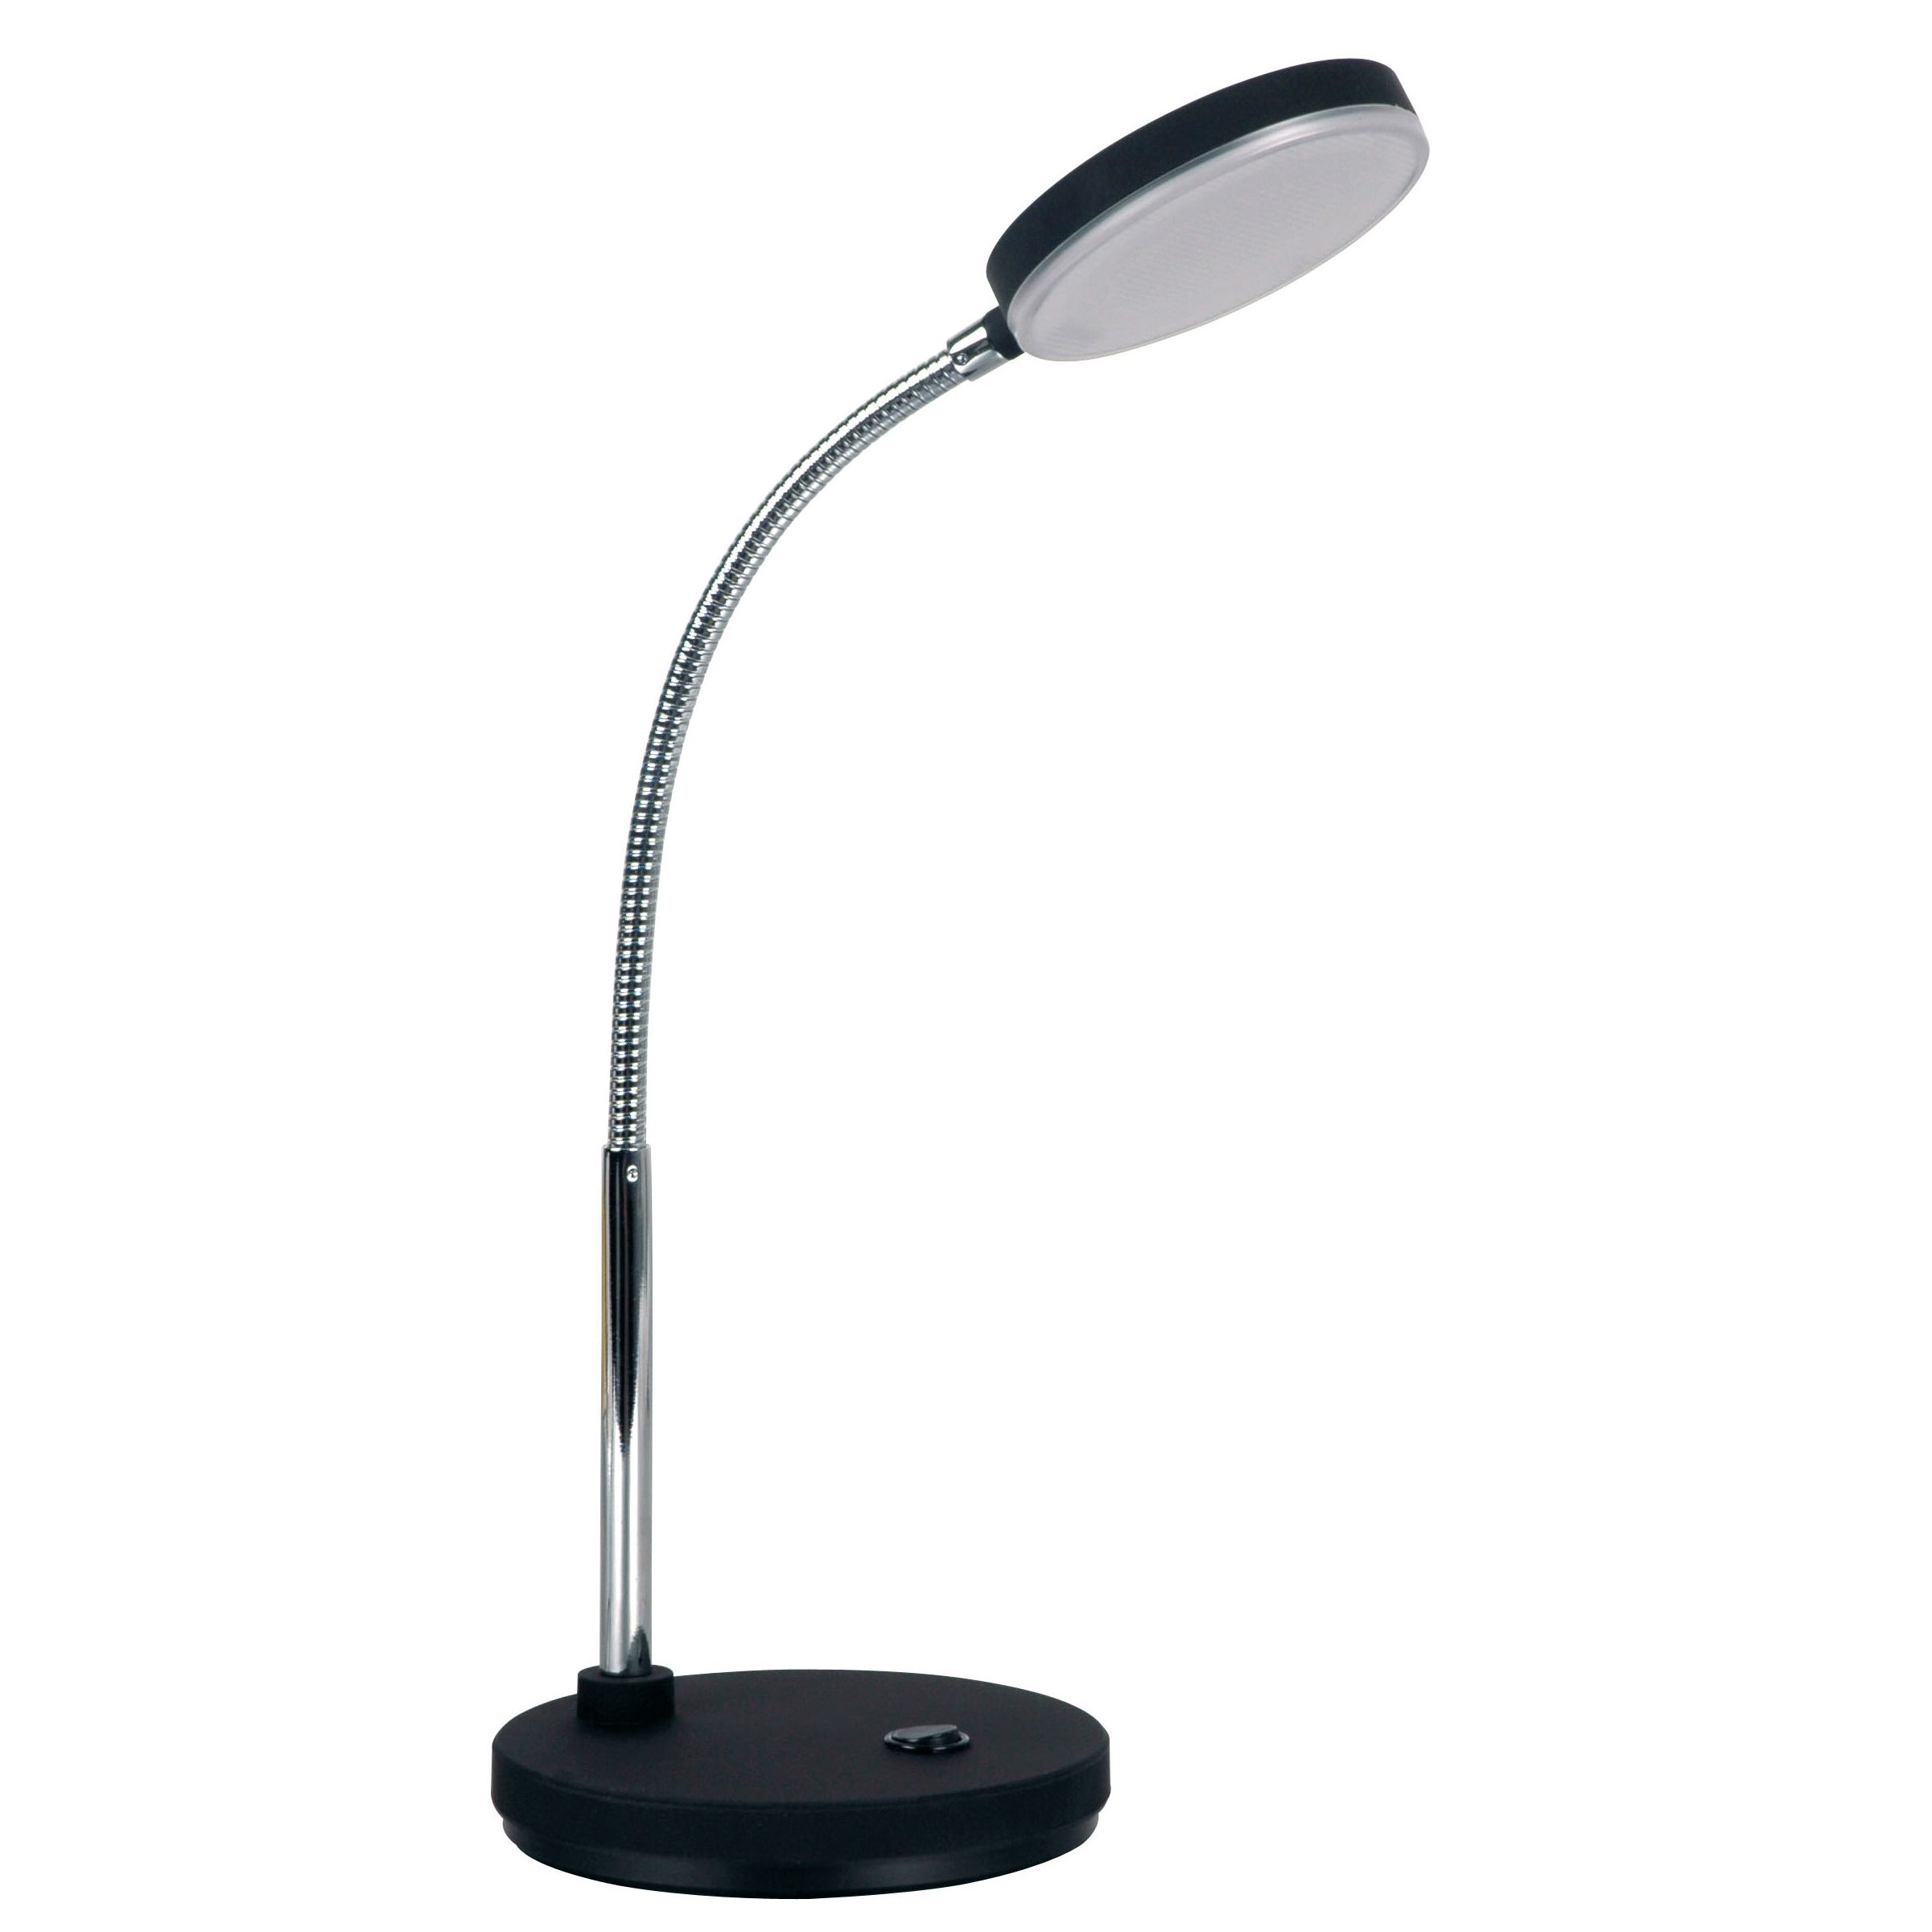 Athene Grande puissante lampe de bureau LED flexible noir: Less n More,  luminaire design fabriqué en Allemagne - Réf. 12060310 - mobile